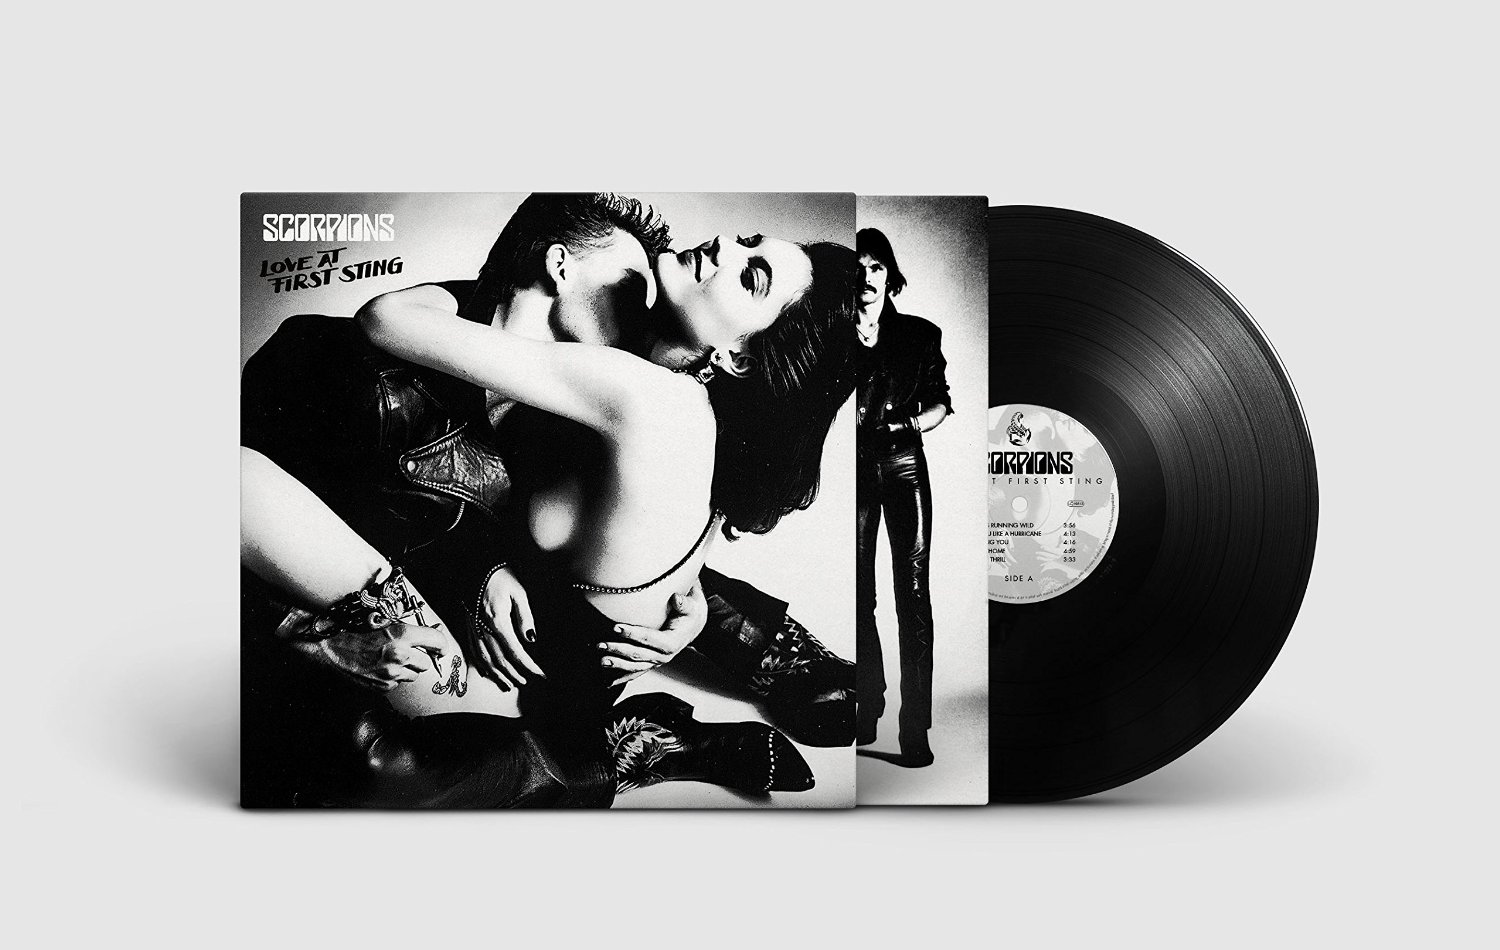 Sortie du célèbre album Love at First Sting Scorpions en vinyle LP, incluan...